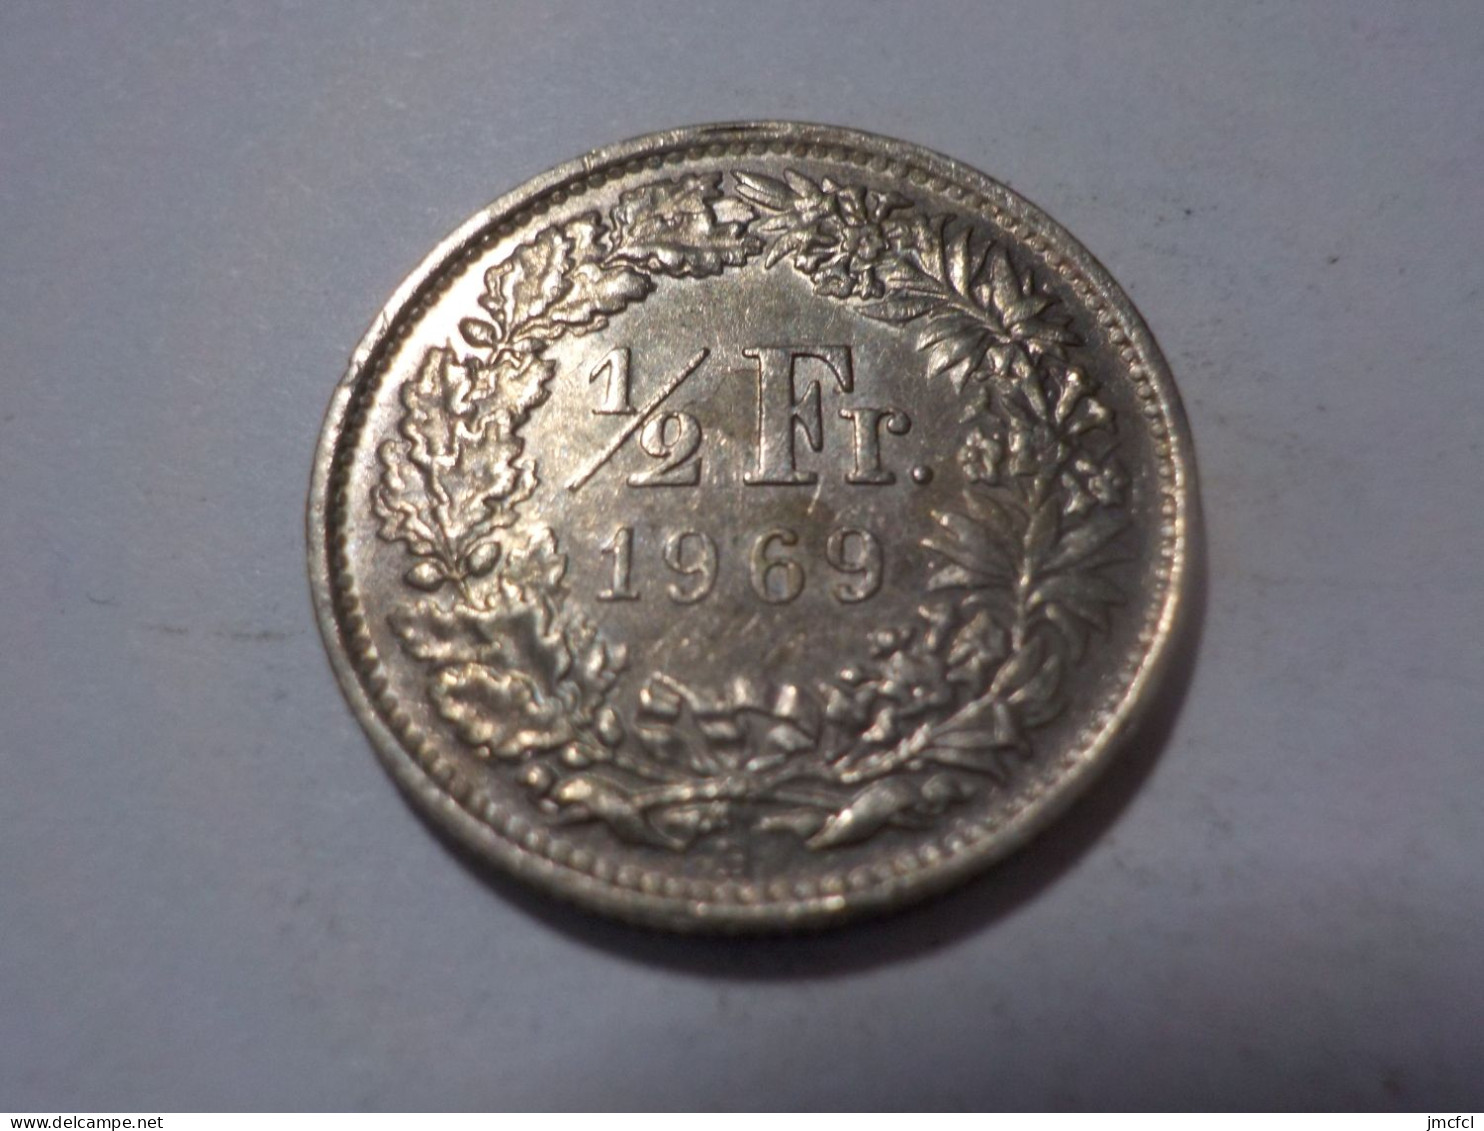 SUISSE  1/2  Franc 1969 - 1/2 Franc